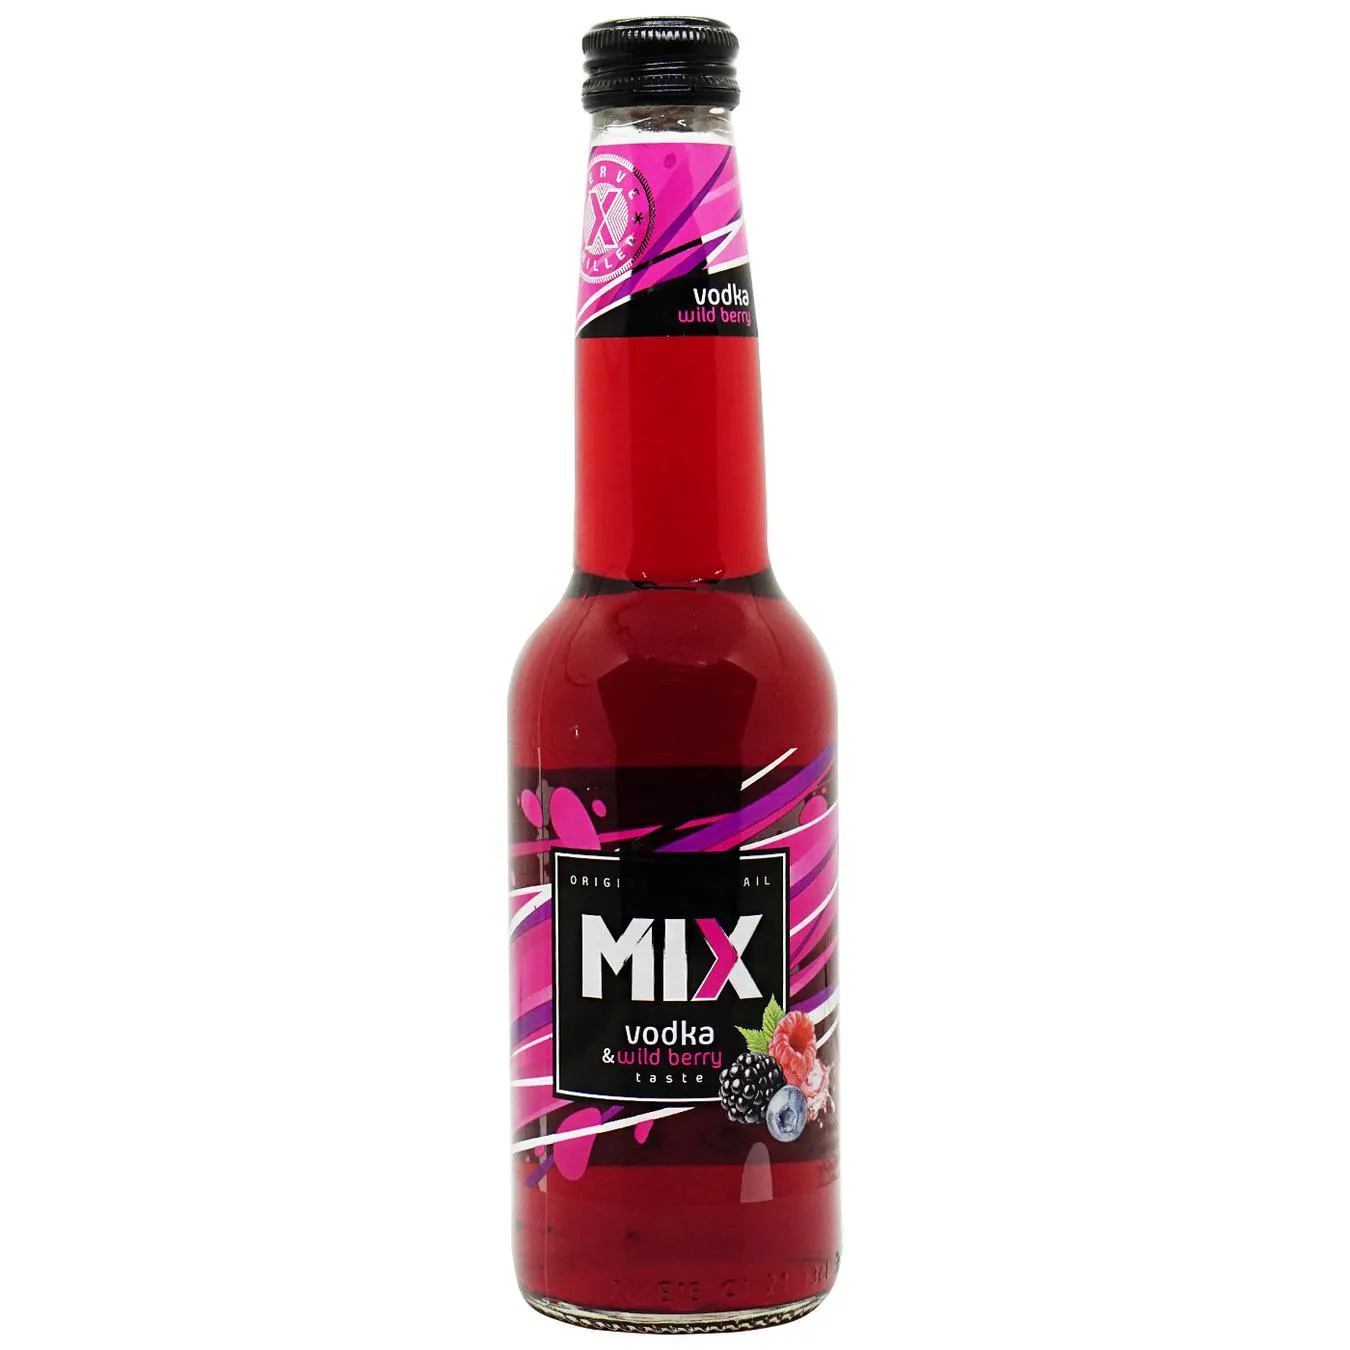 Drink MIX vodka forest berries 4% 0.33l s/pl